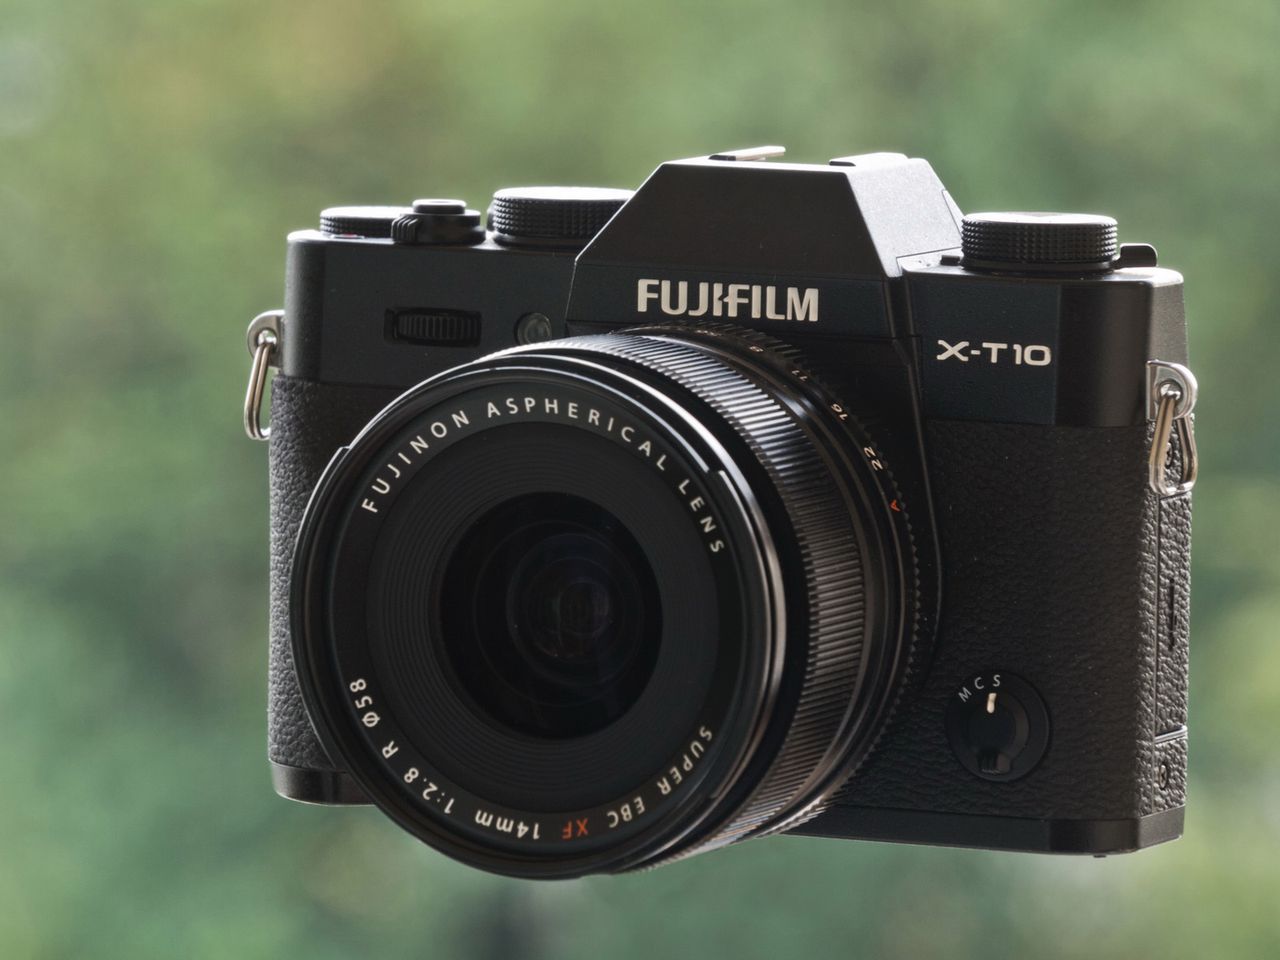 Fujifilm X-T10 - skromnie i klasycznie [test]